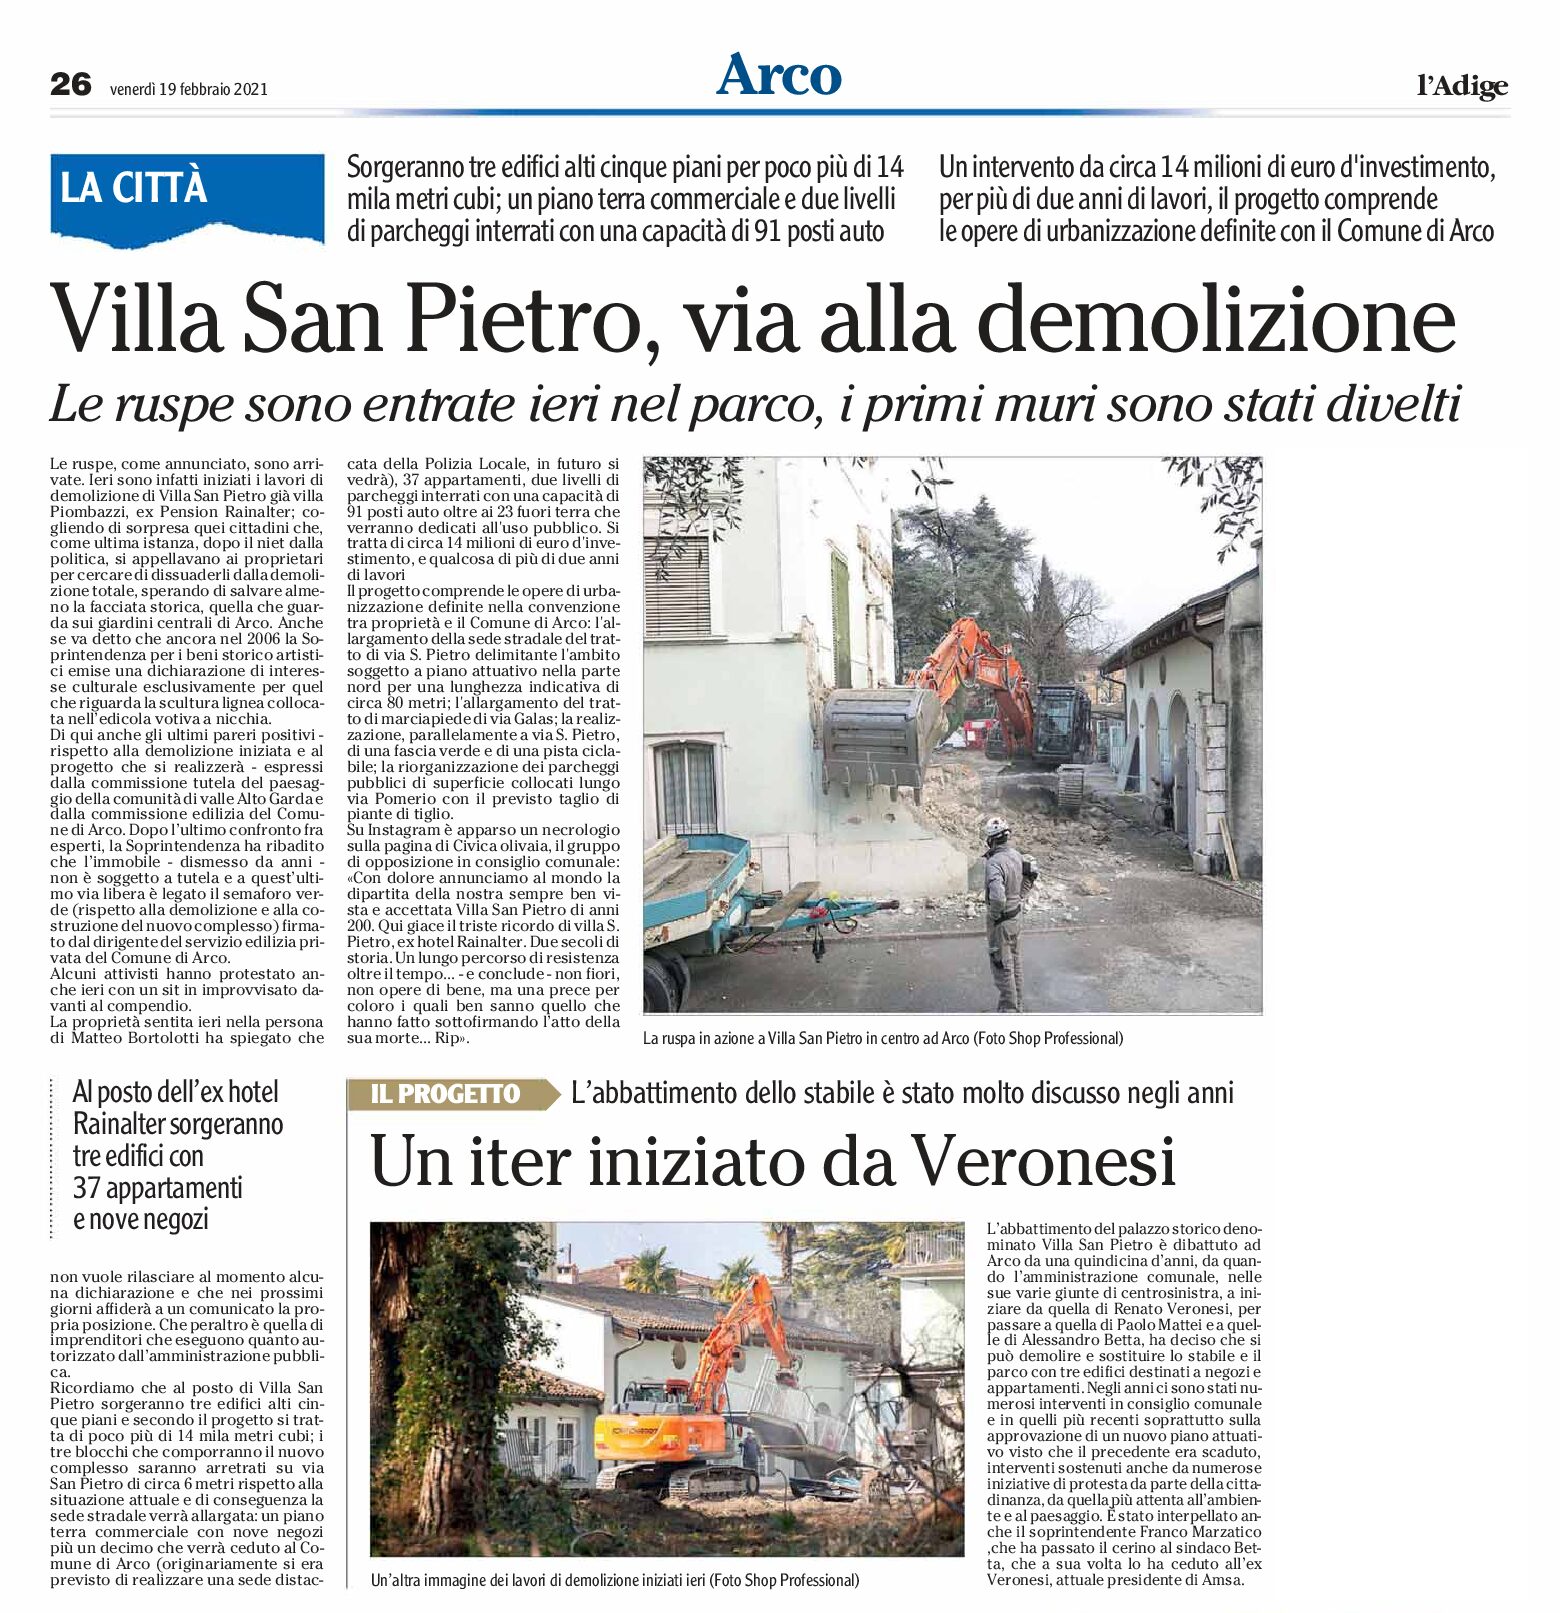 Arco, villa San Pietro: iniziata la demolizione